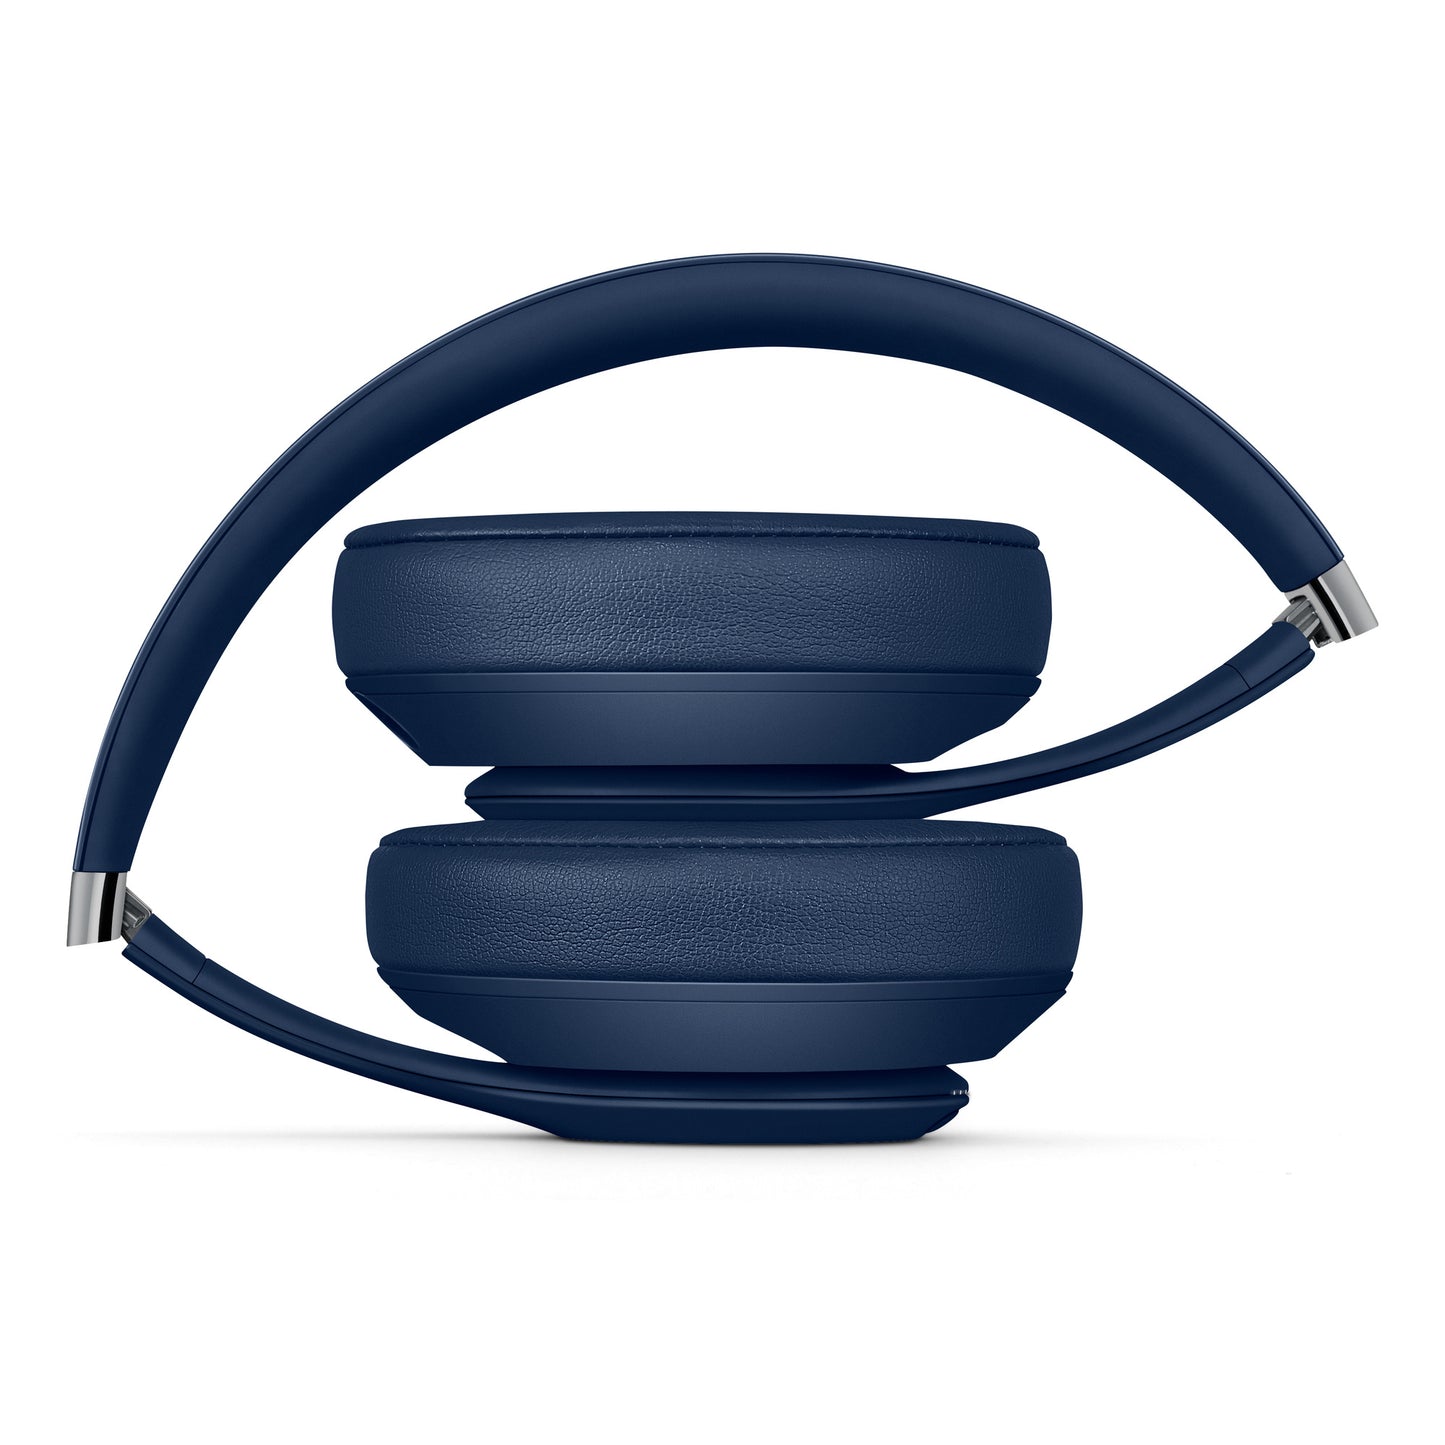 Beats Studio3 Wireless Over_Ear Headphones - Blue